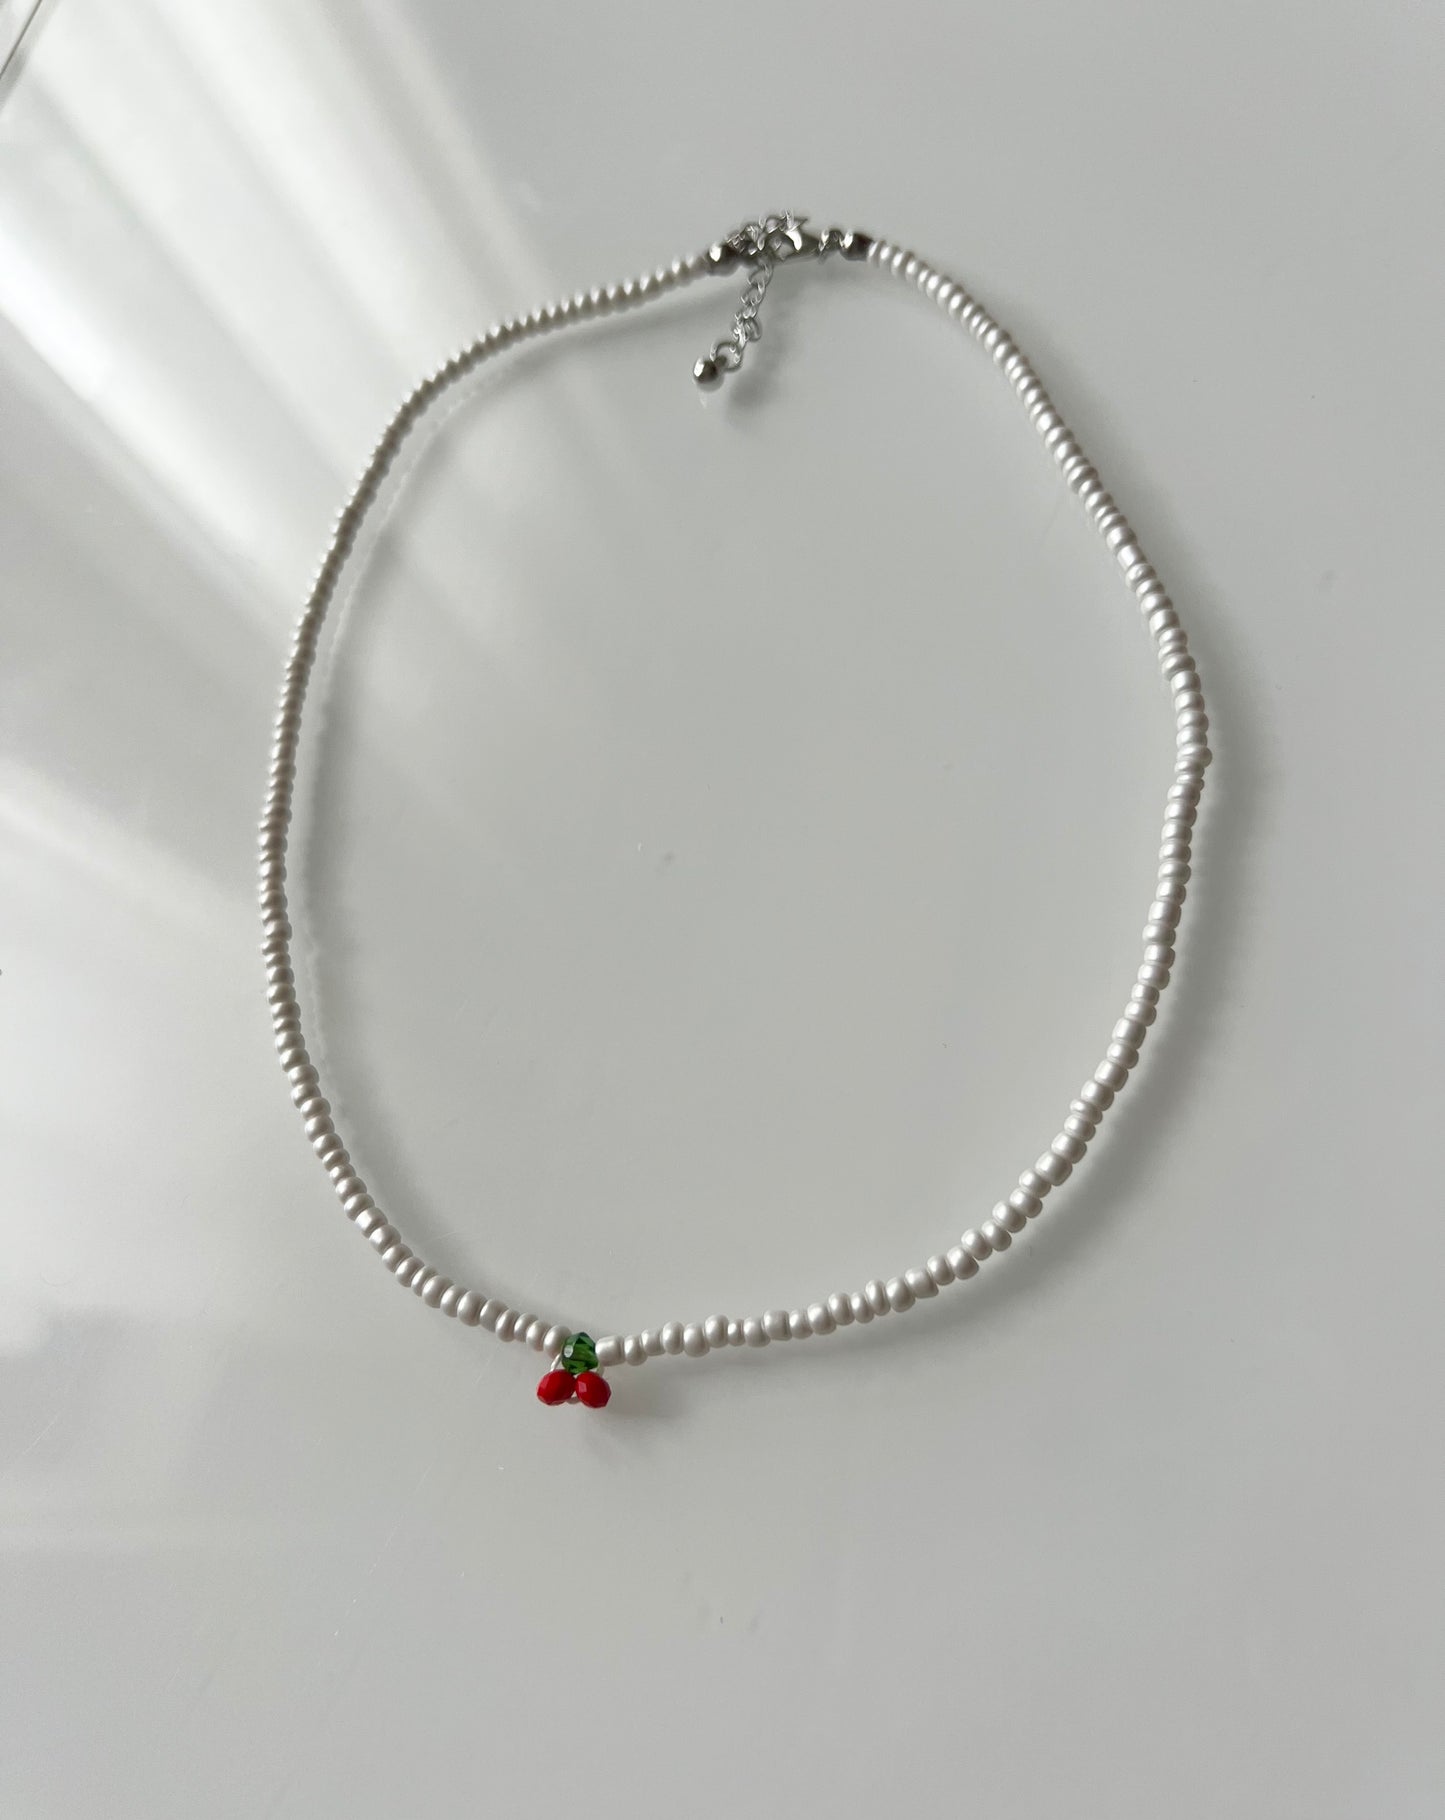 Cherry Bead necklace